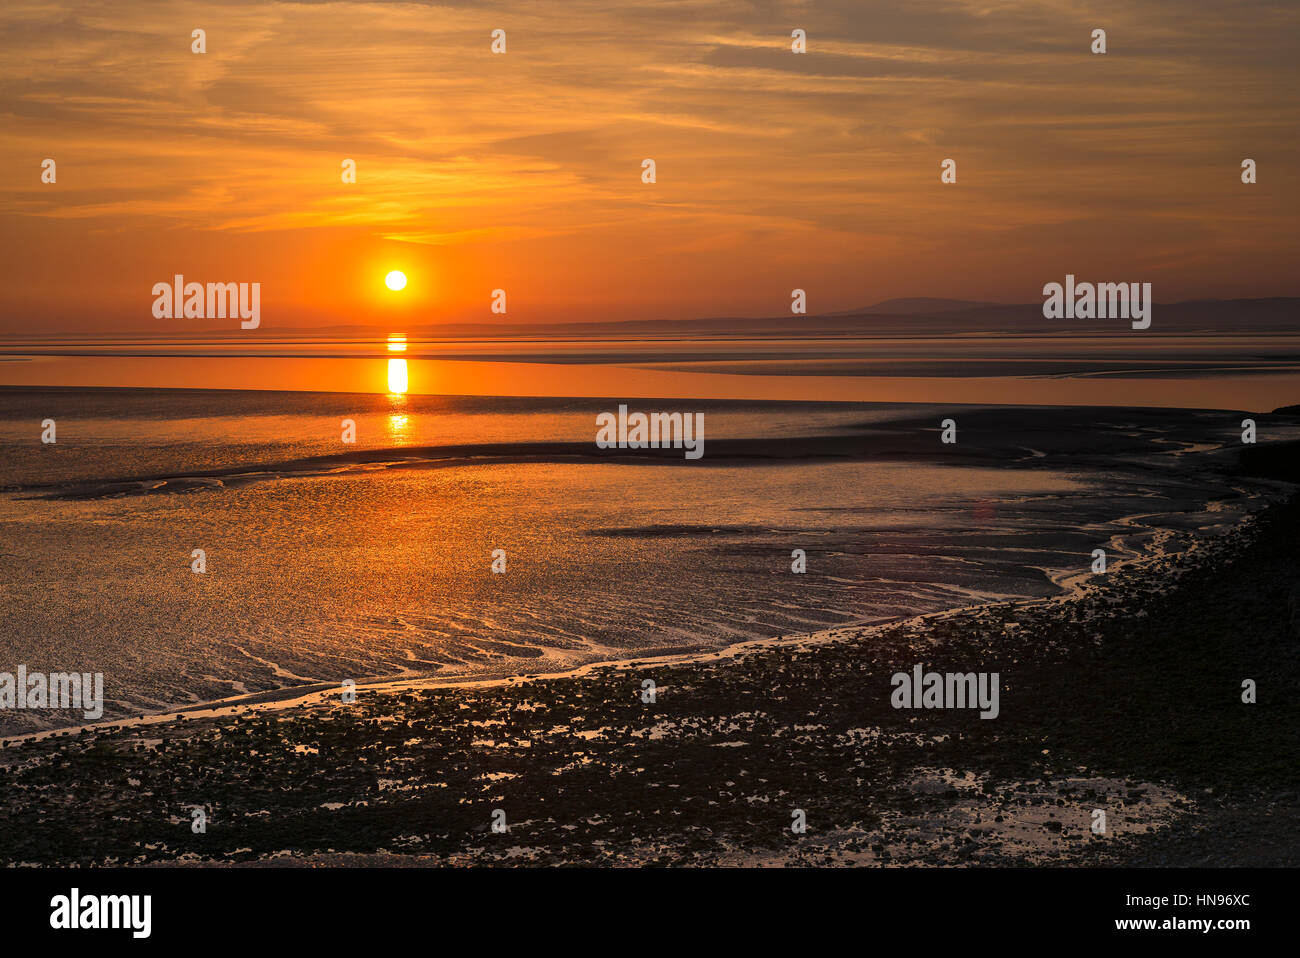 Sunset over 'Morecambe Bay' in Lancashire England UK Stock Photo